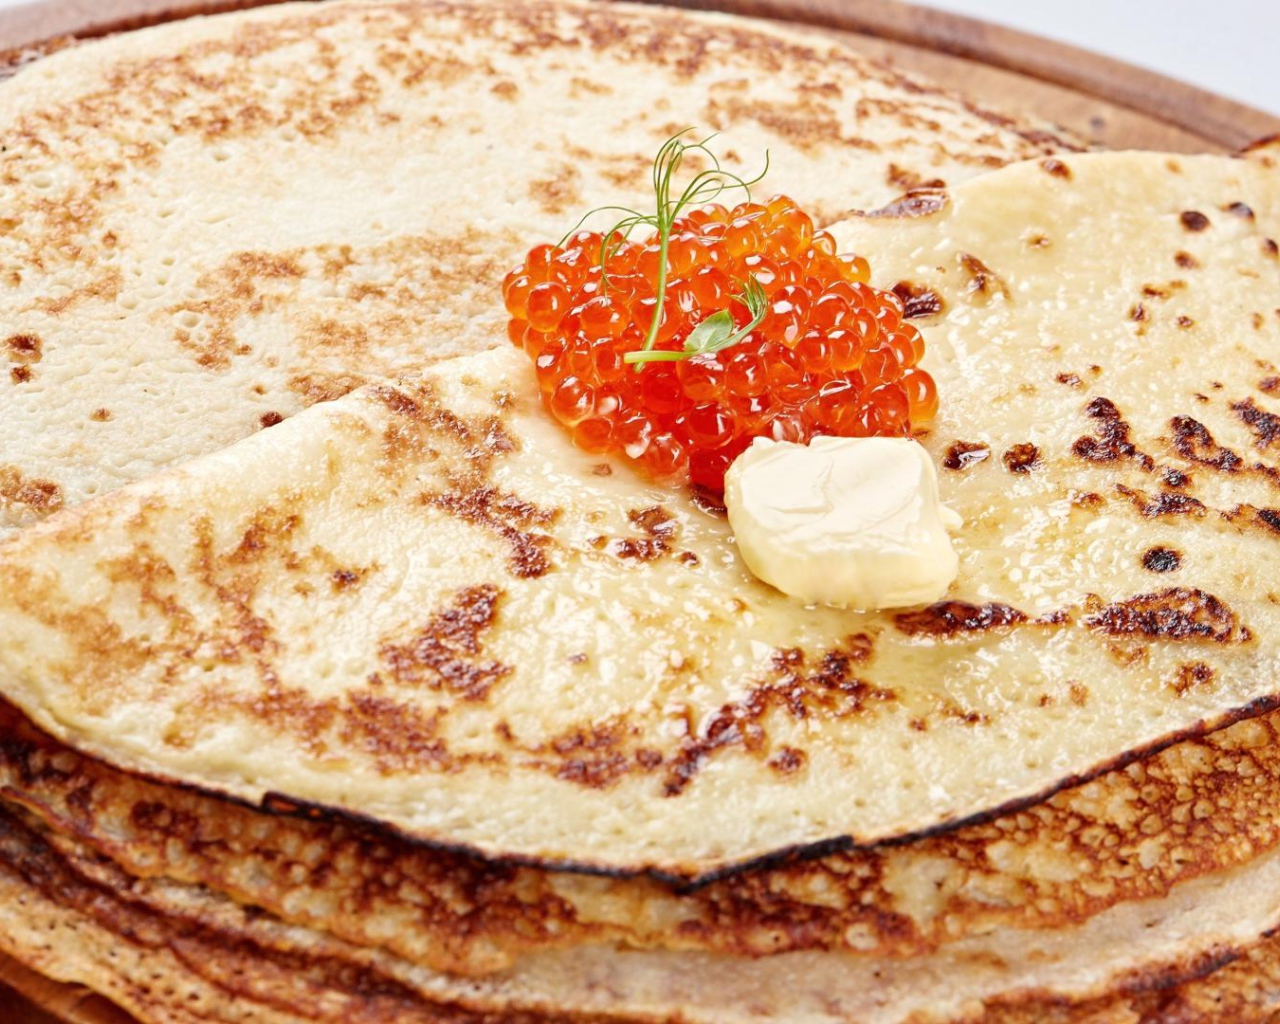 Ruddy pancakes with red caviar Pancake Day 2017